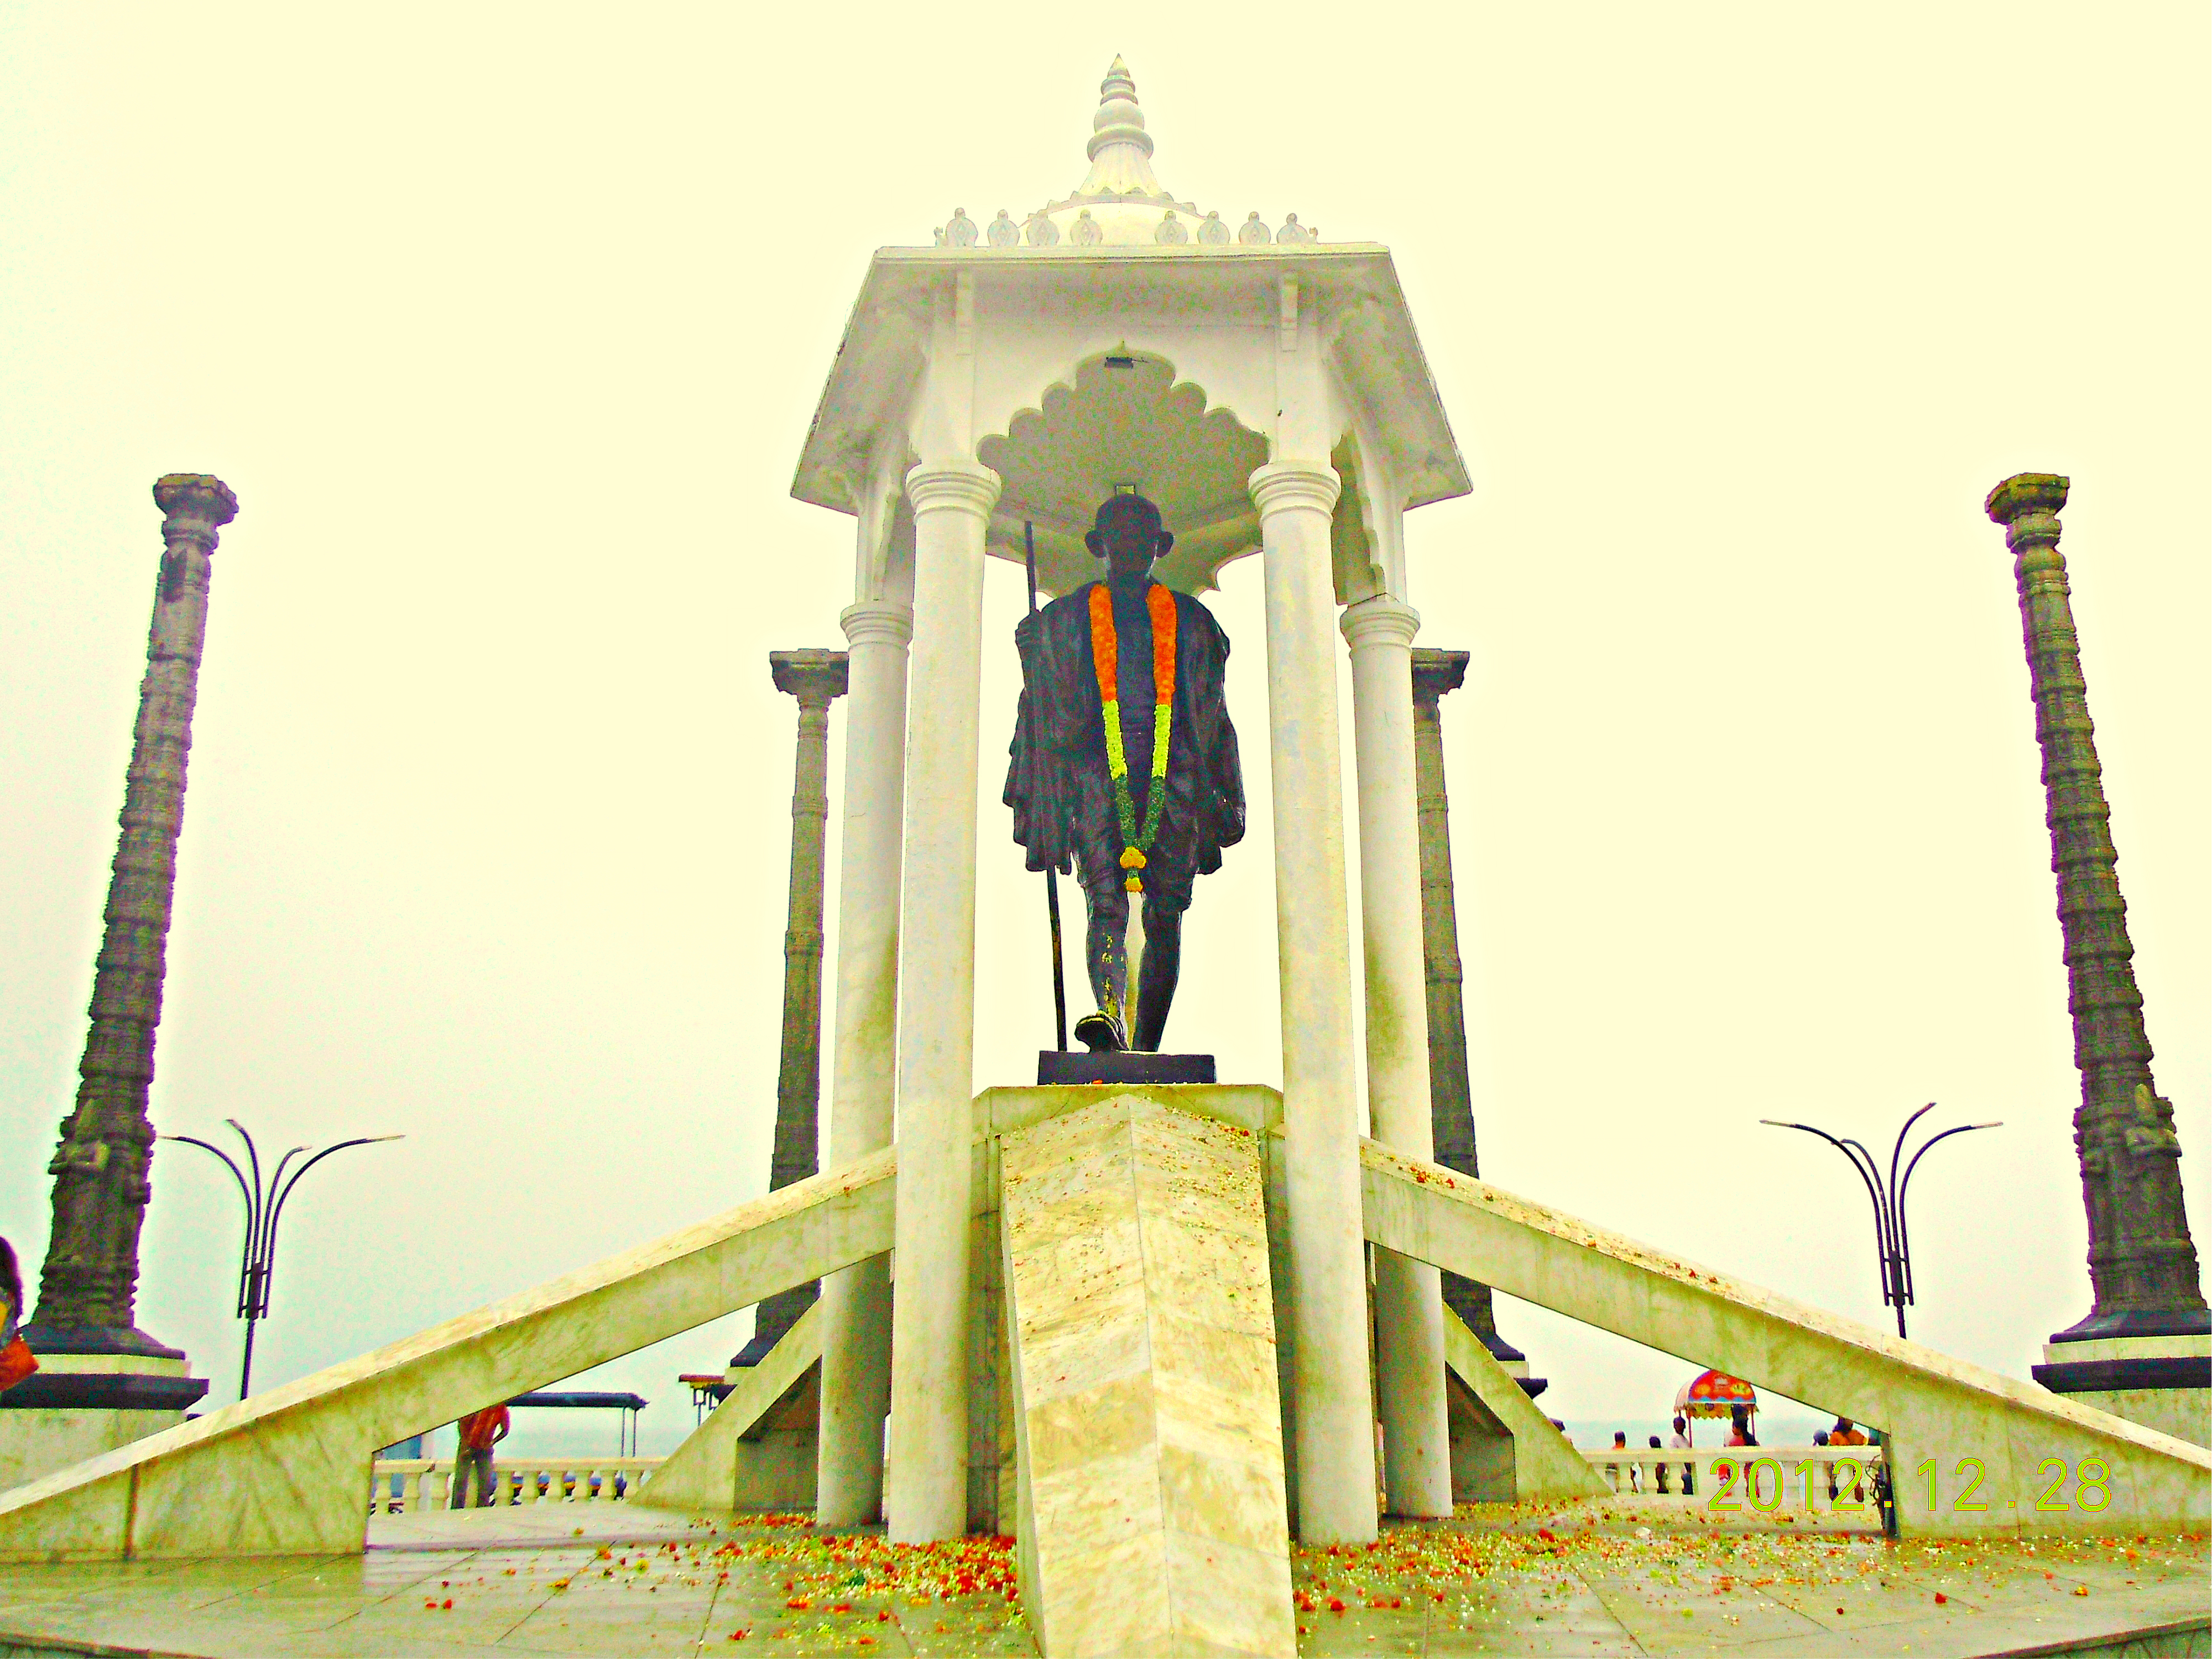 Gandhi statue on the Promenade